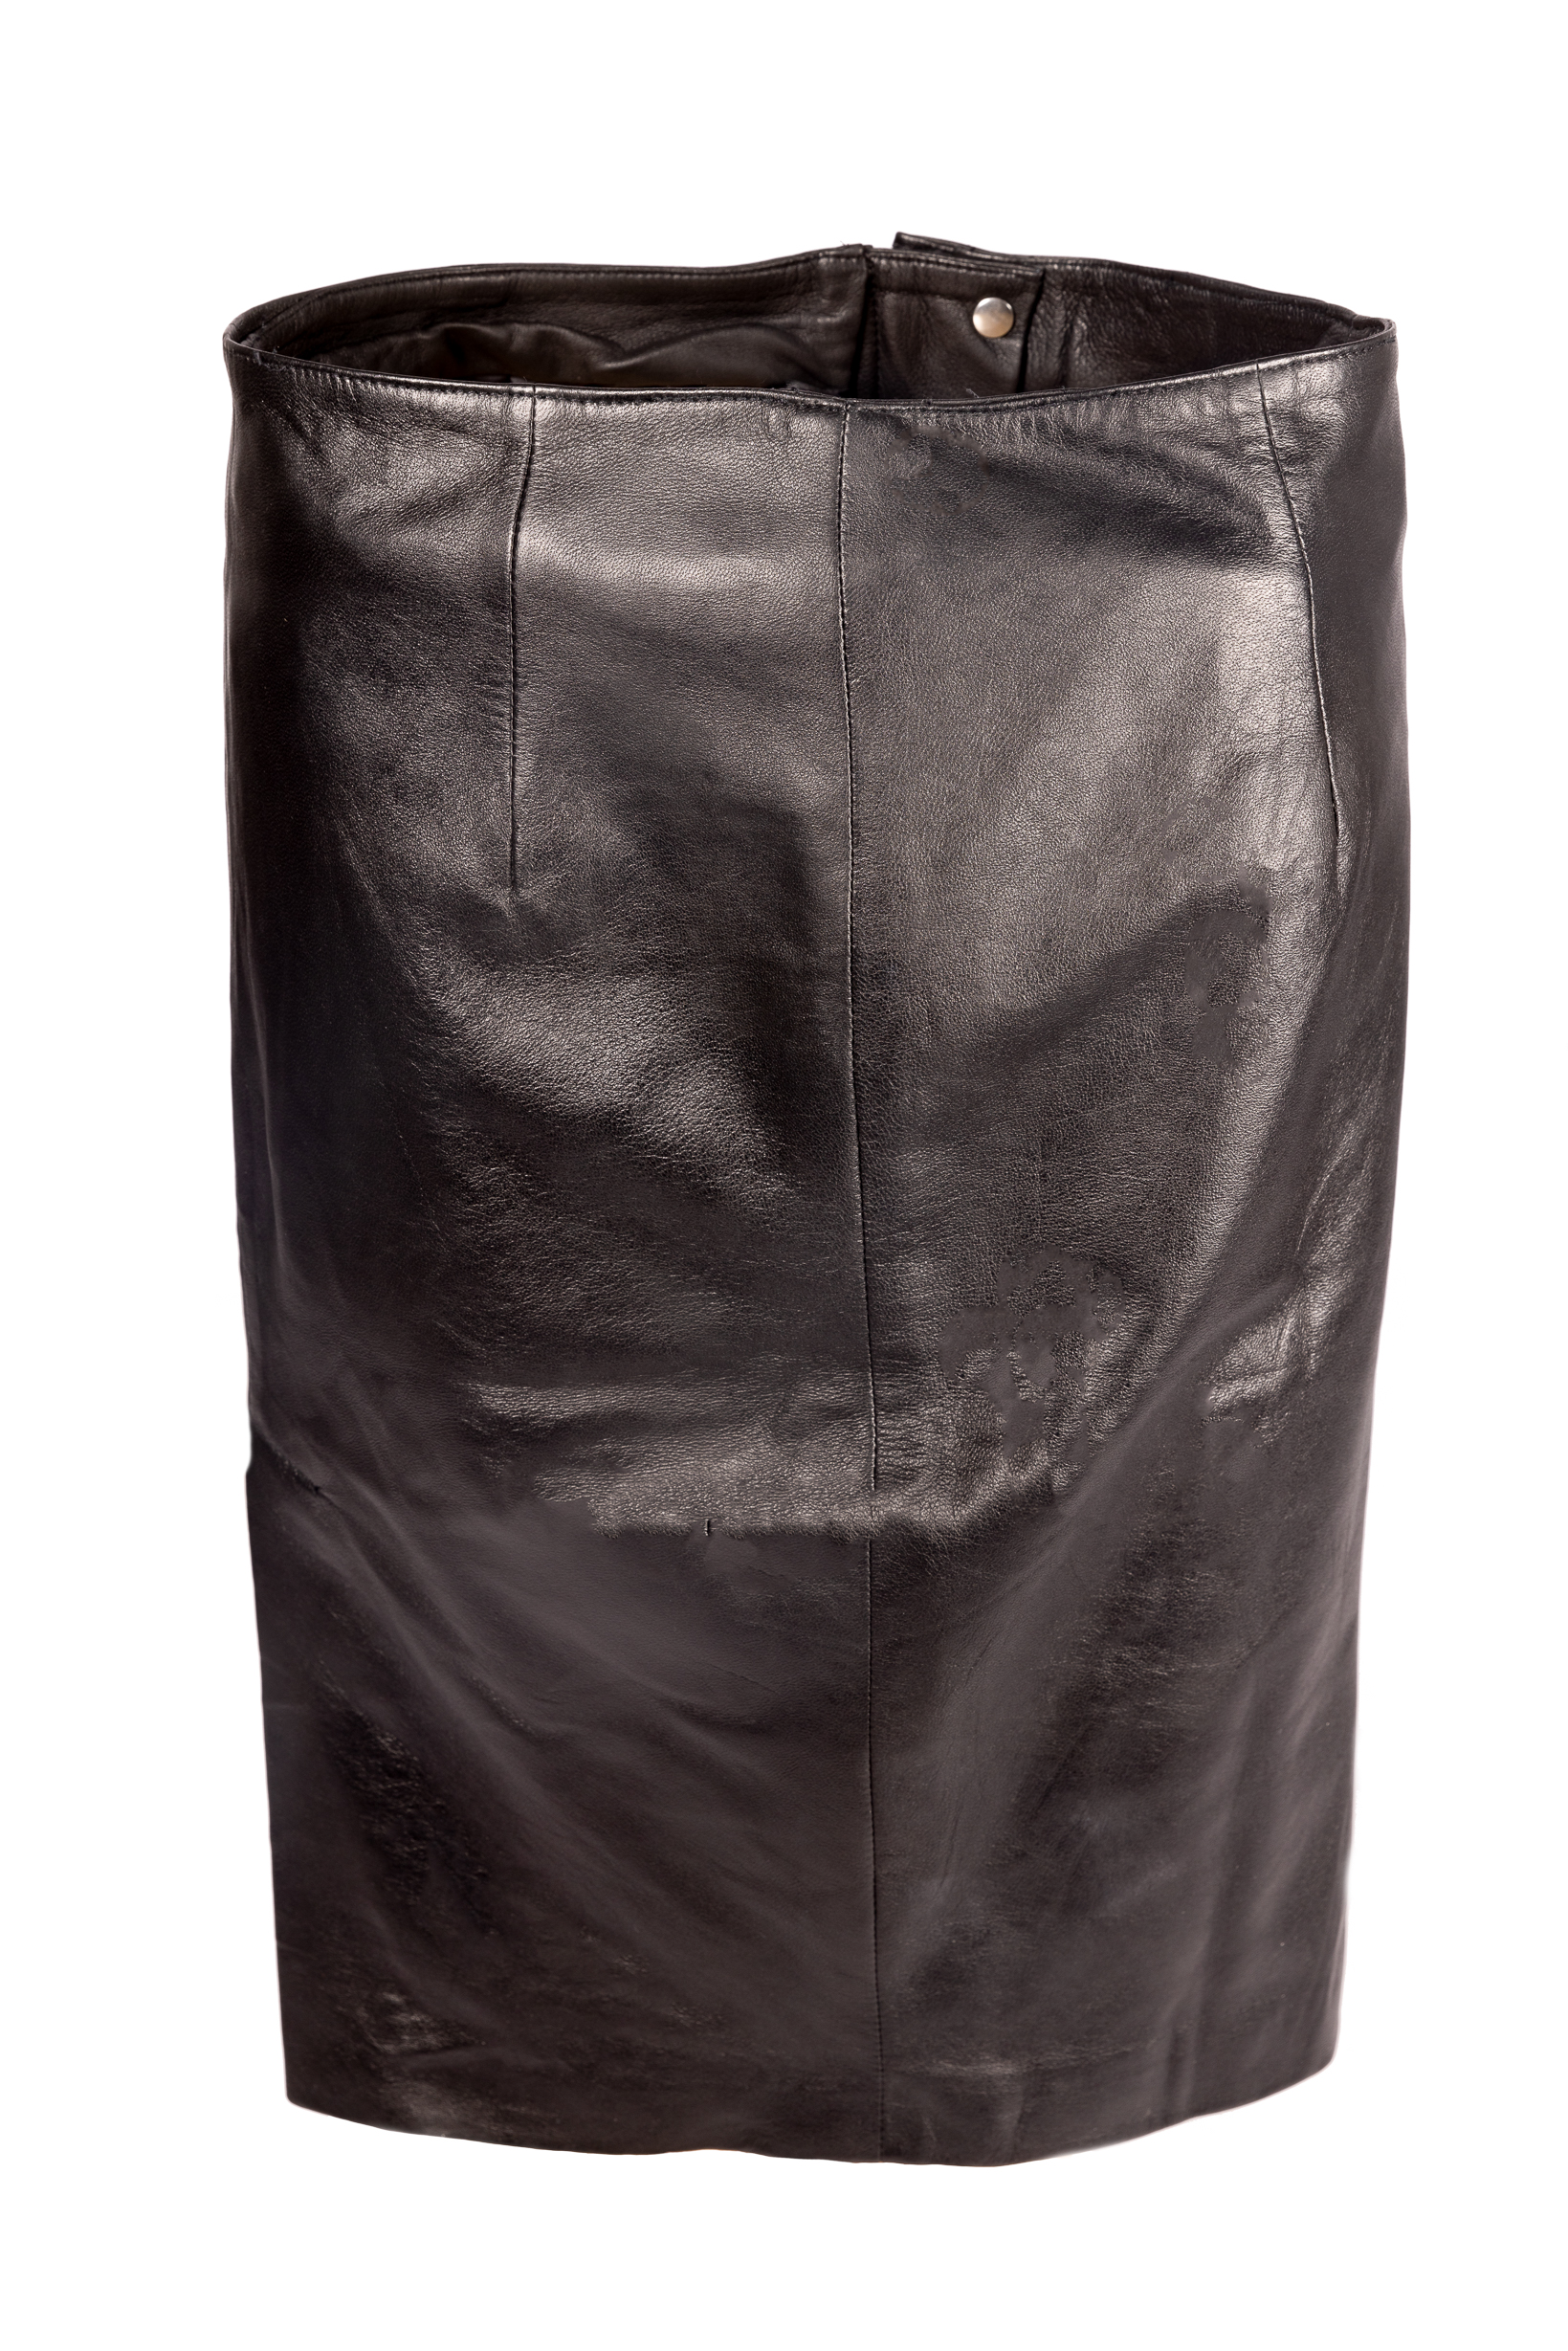 Falda de cuero, falda lápiz de cuero genuino en elegante color negro